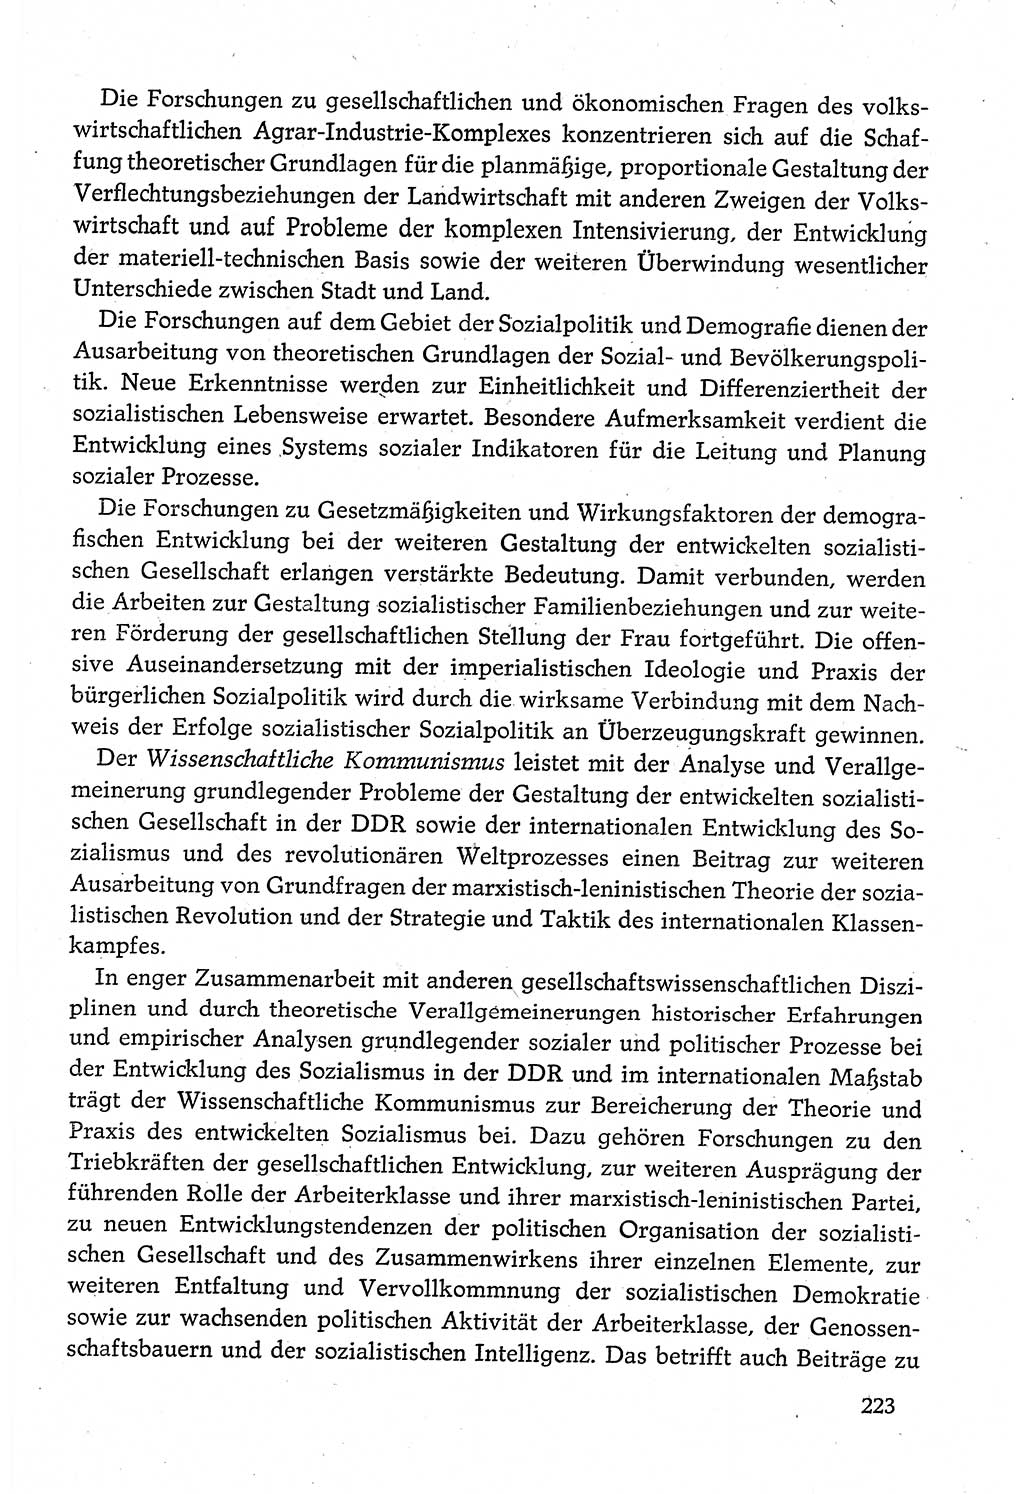 Dokumente der Sozialistischen Einheitspartei Deutschlands (SED) [Deutsche Demokratische Republik (DDR)] 1980-1981, Seite 223 (Dok. SED DDR 1980-1981, S. 223)